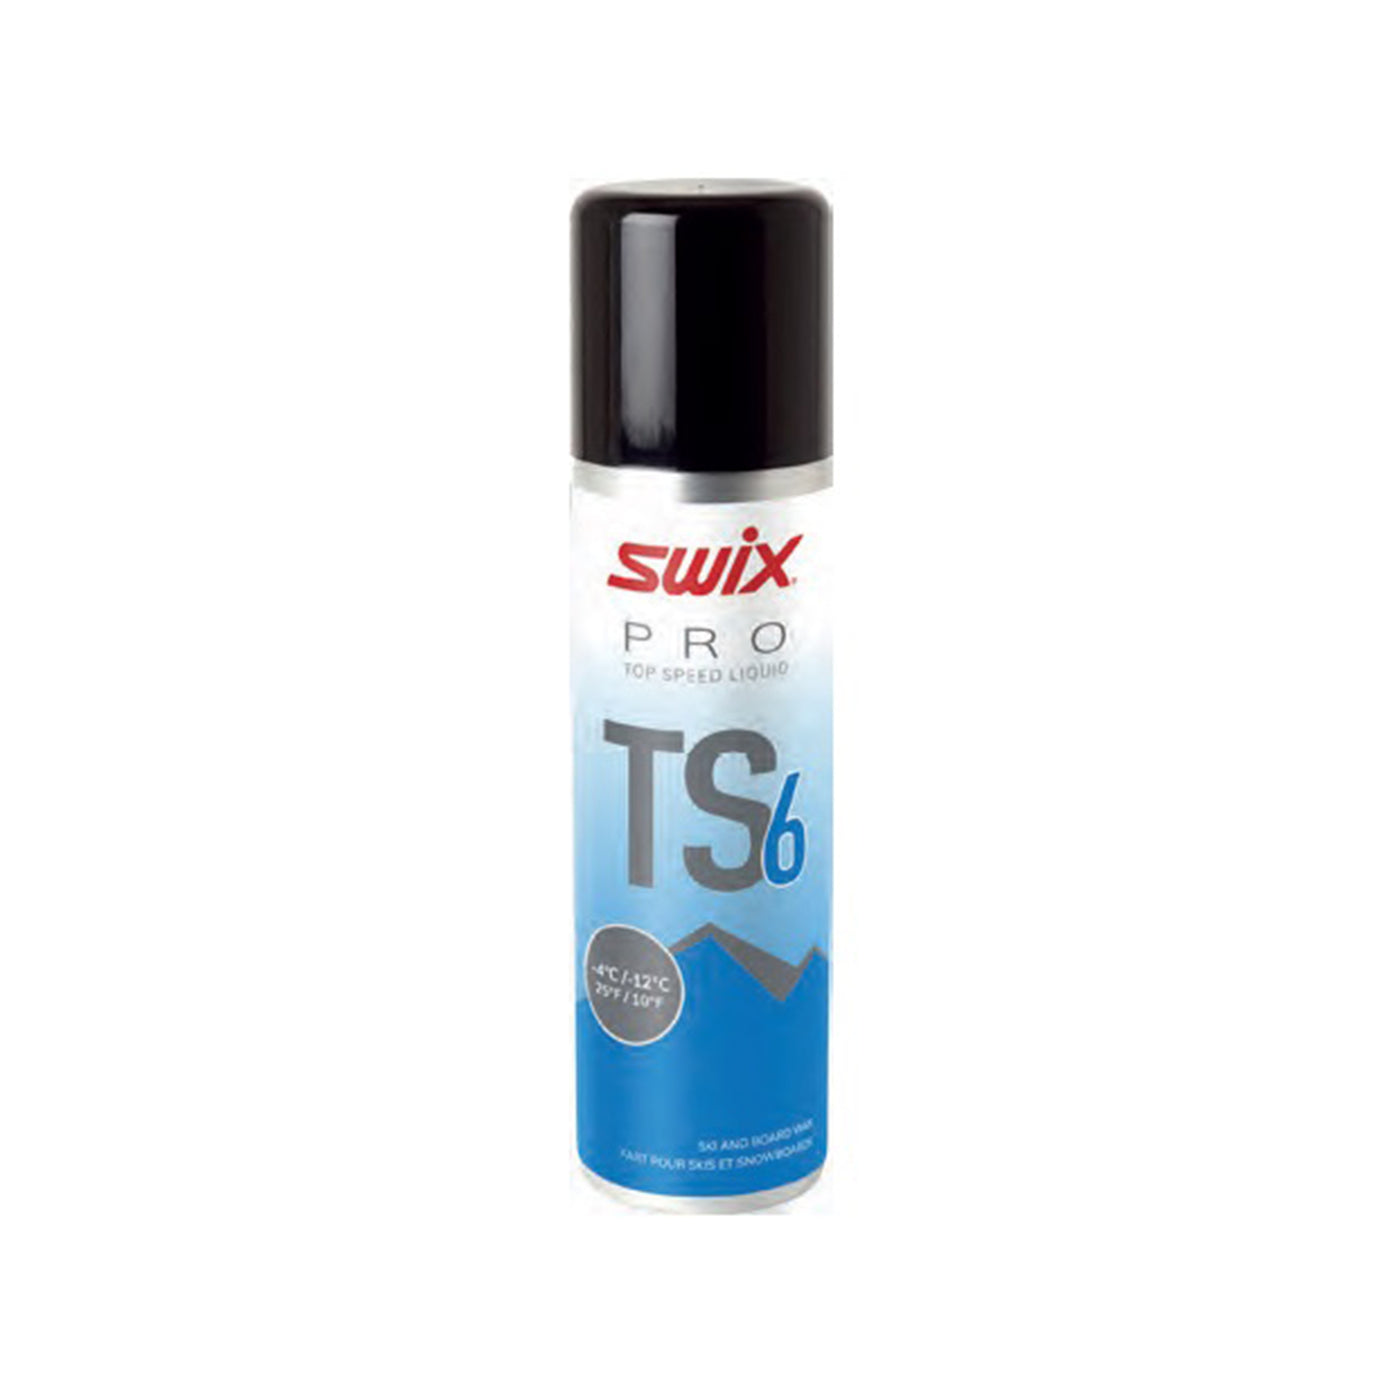 Swix TS6 Blue Liquid, 50mL - Top Speed | UPS Ground Only SKI & SNOWBOARD WAX Swix   